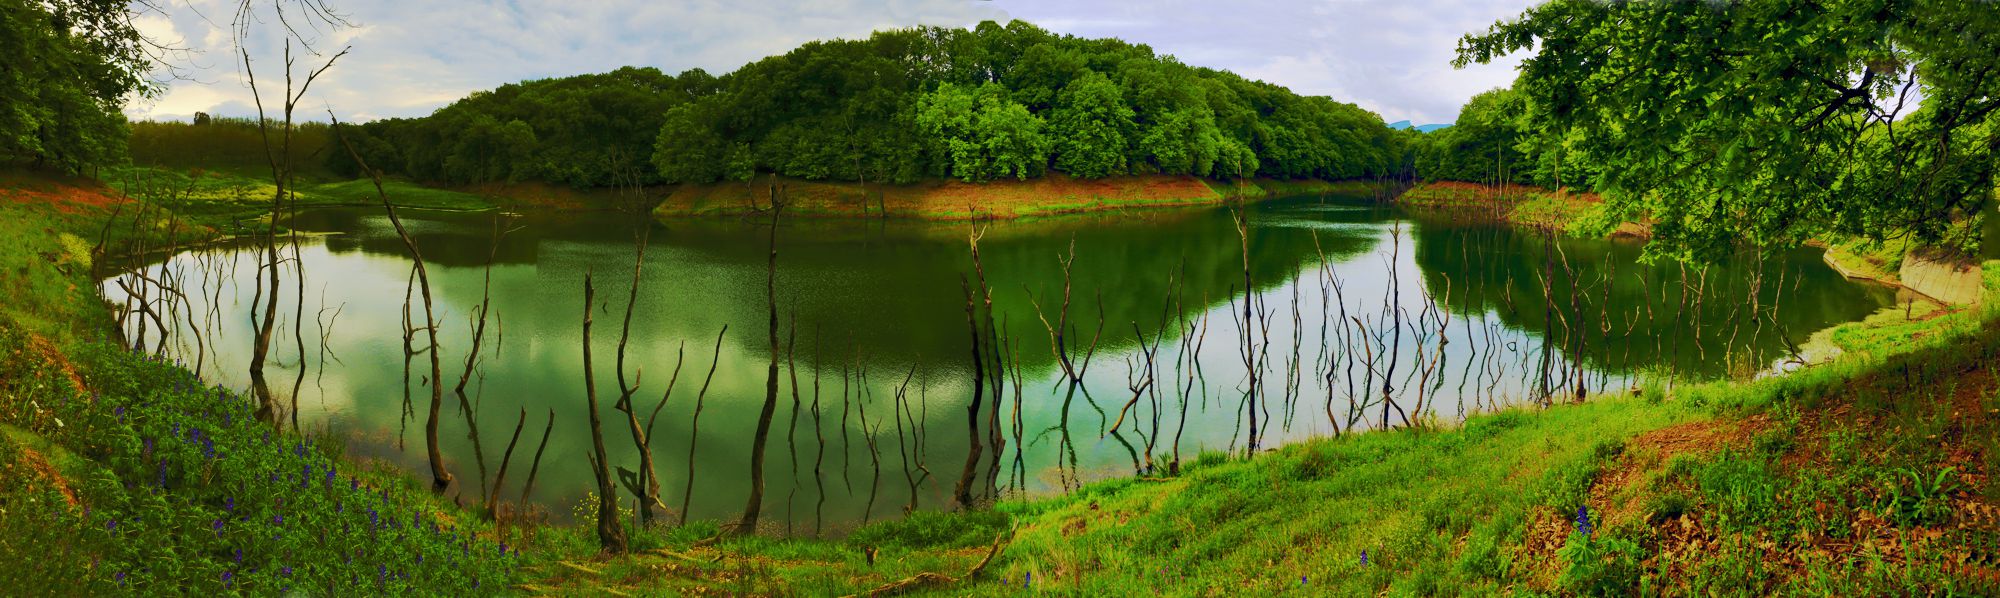 Βλάστηση του Λύκαιου: Λίμνη στα Καμπιά του Αγίου Σύλλα